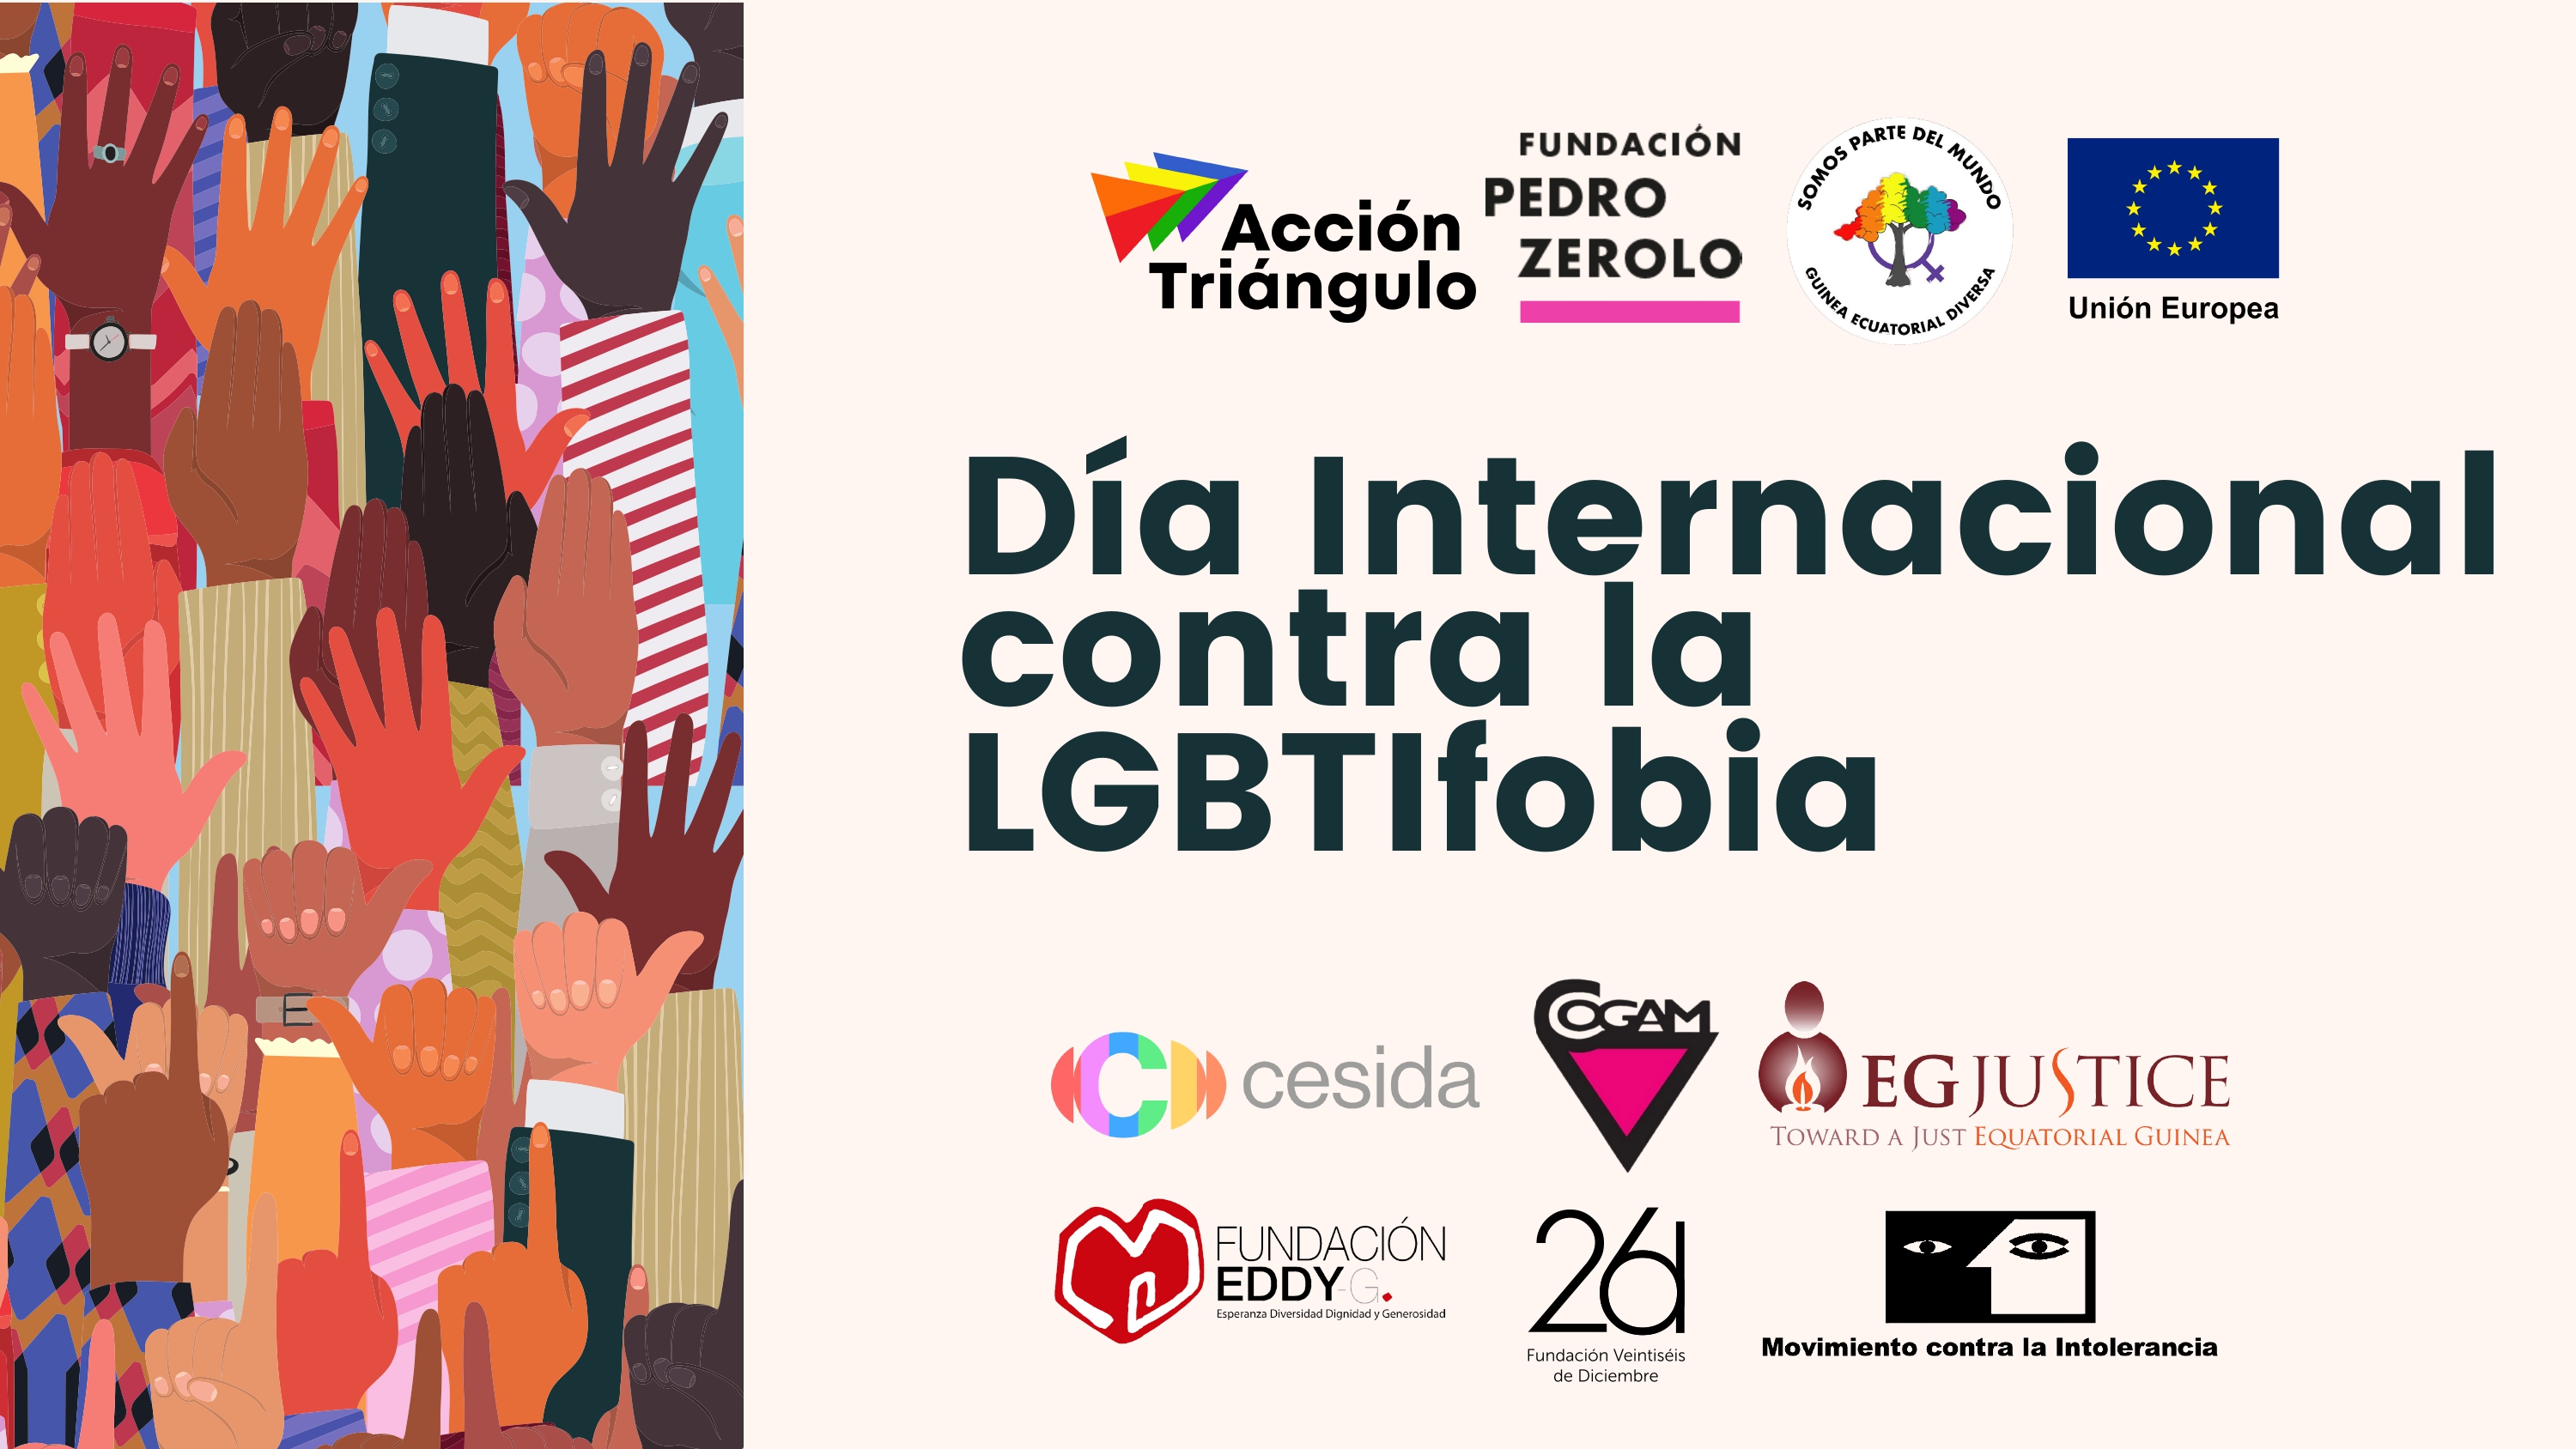 Día Internacional contra la LGTBIfobia